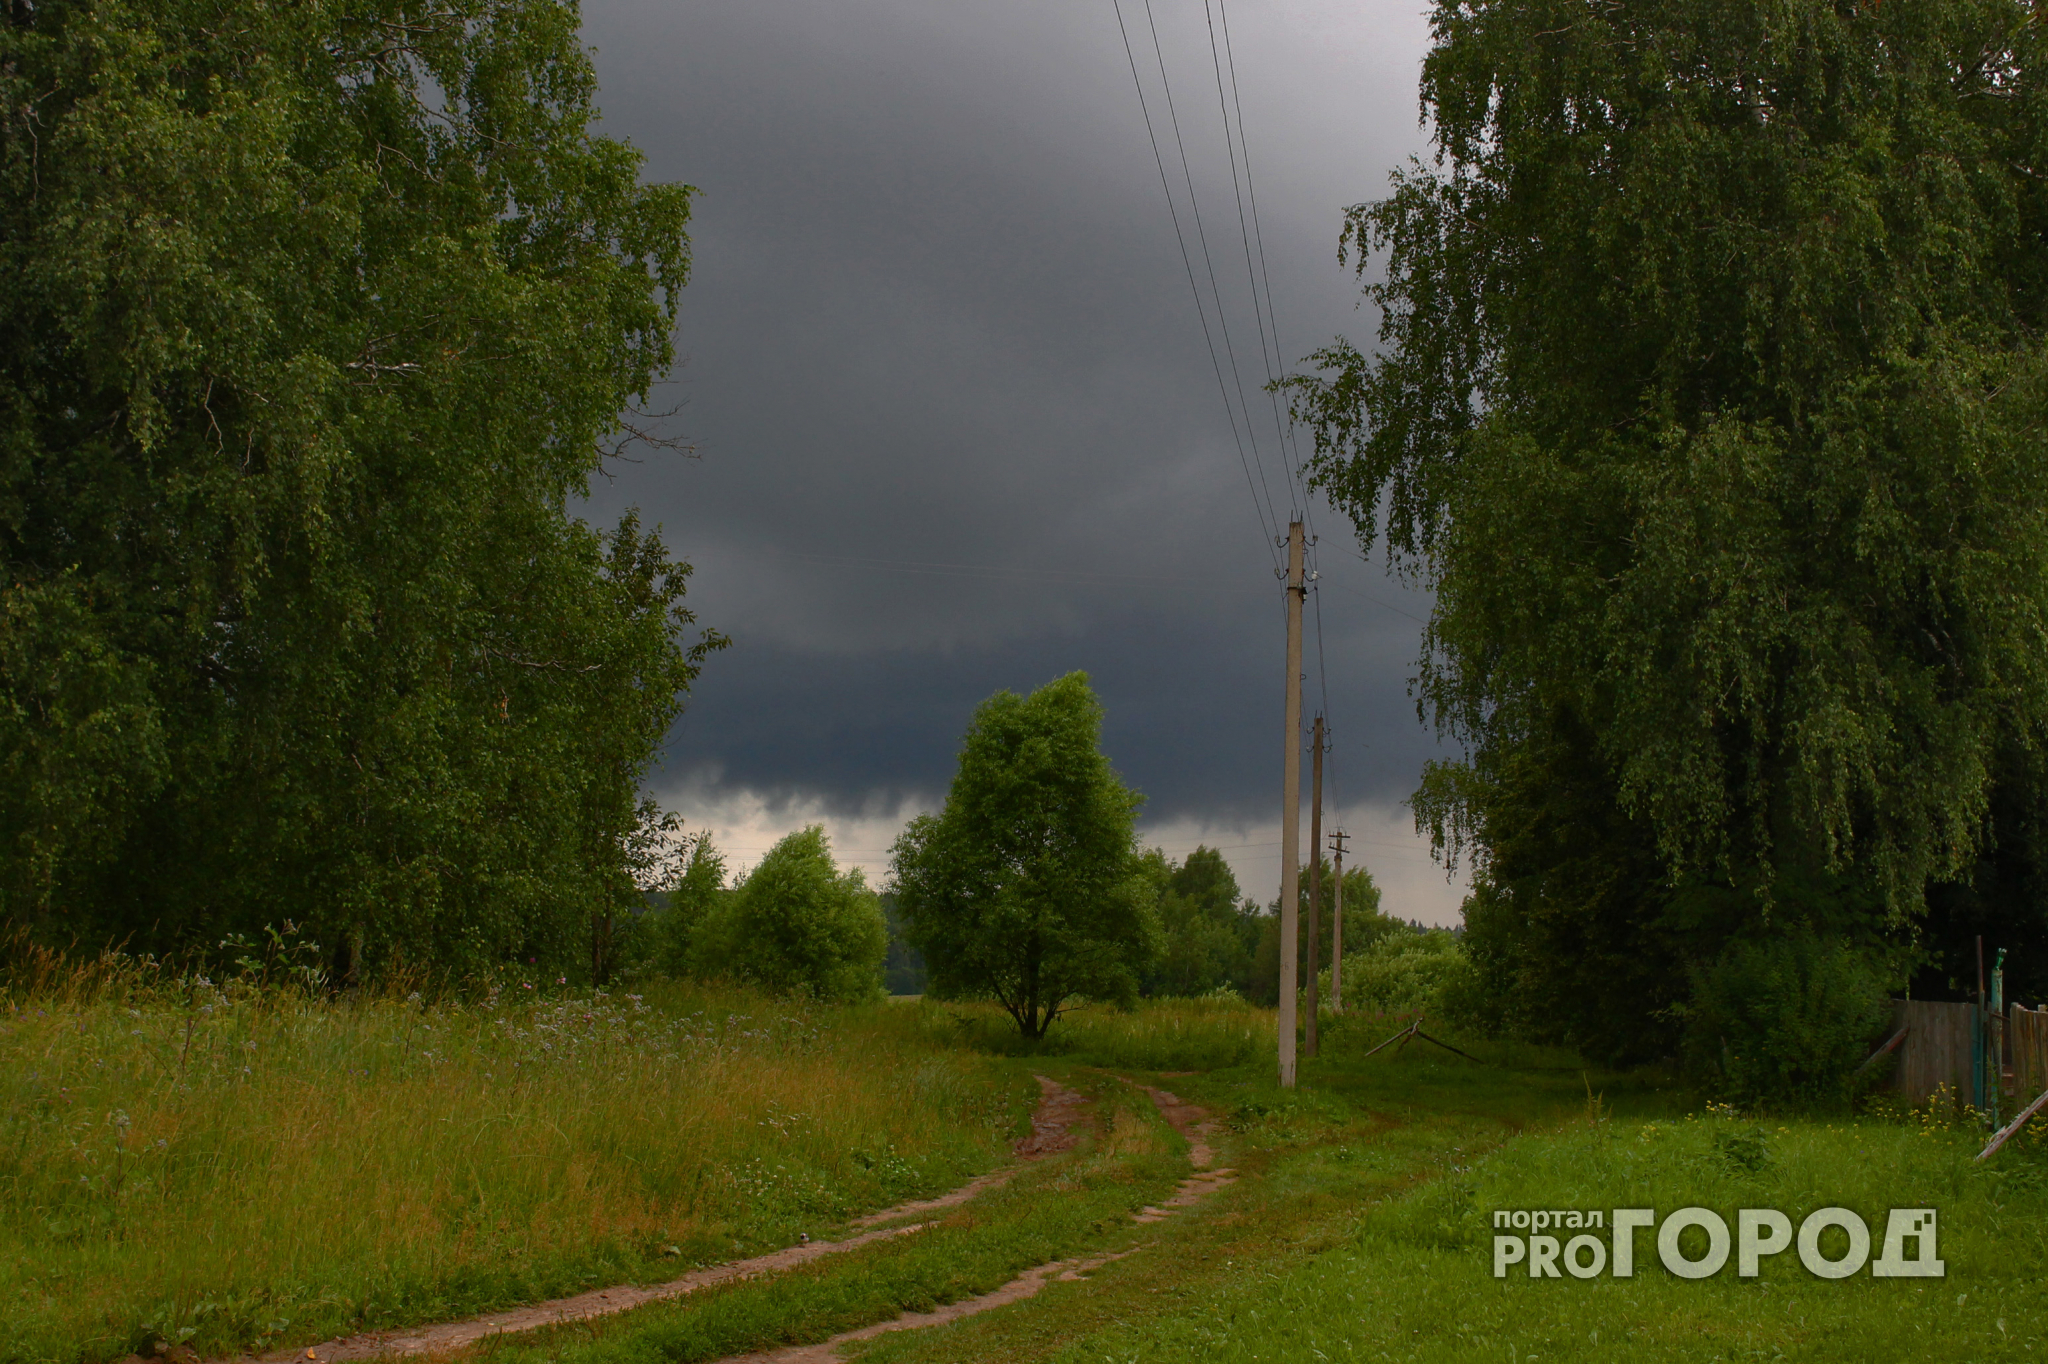 Дожди и грозы: МЧС опубликовало прогноз погоды в Кирове на вторник